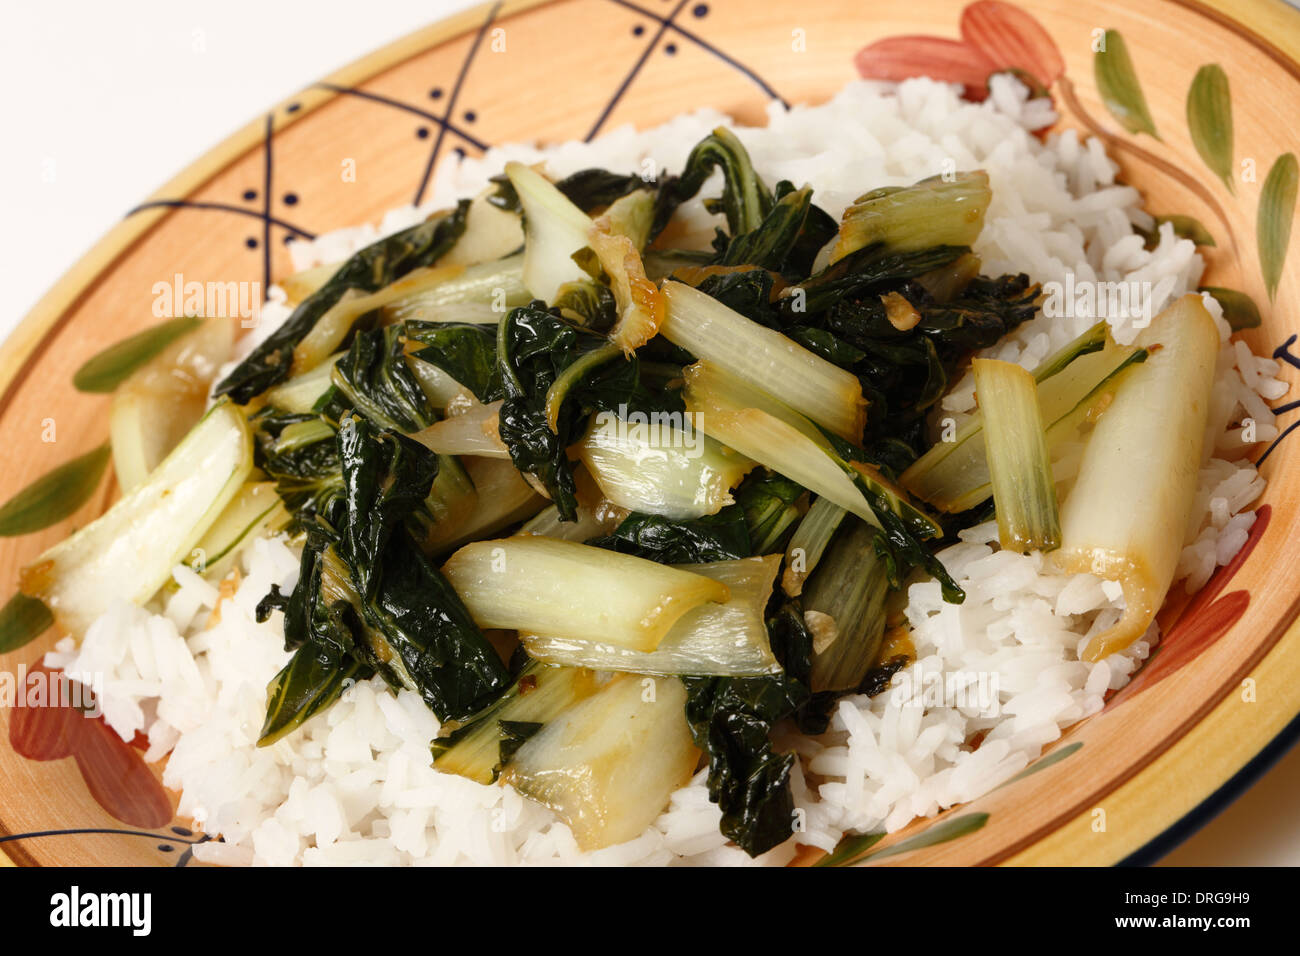 Une plaque avec le bok choi sauté de chou asiatique et haché avec l'huile de sésame et la sauce de soja, servi sur un lit de riz au jasmin blanc Banque D'Images